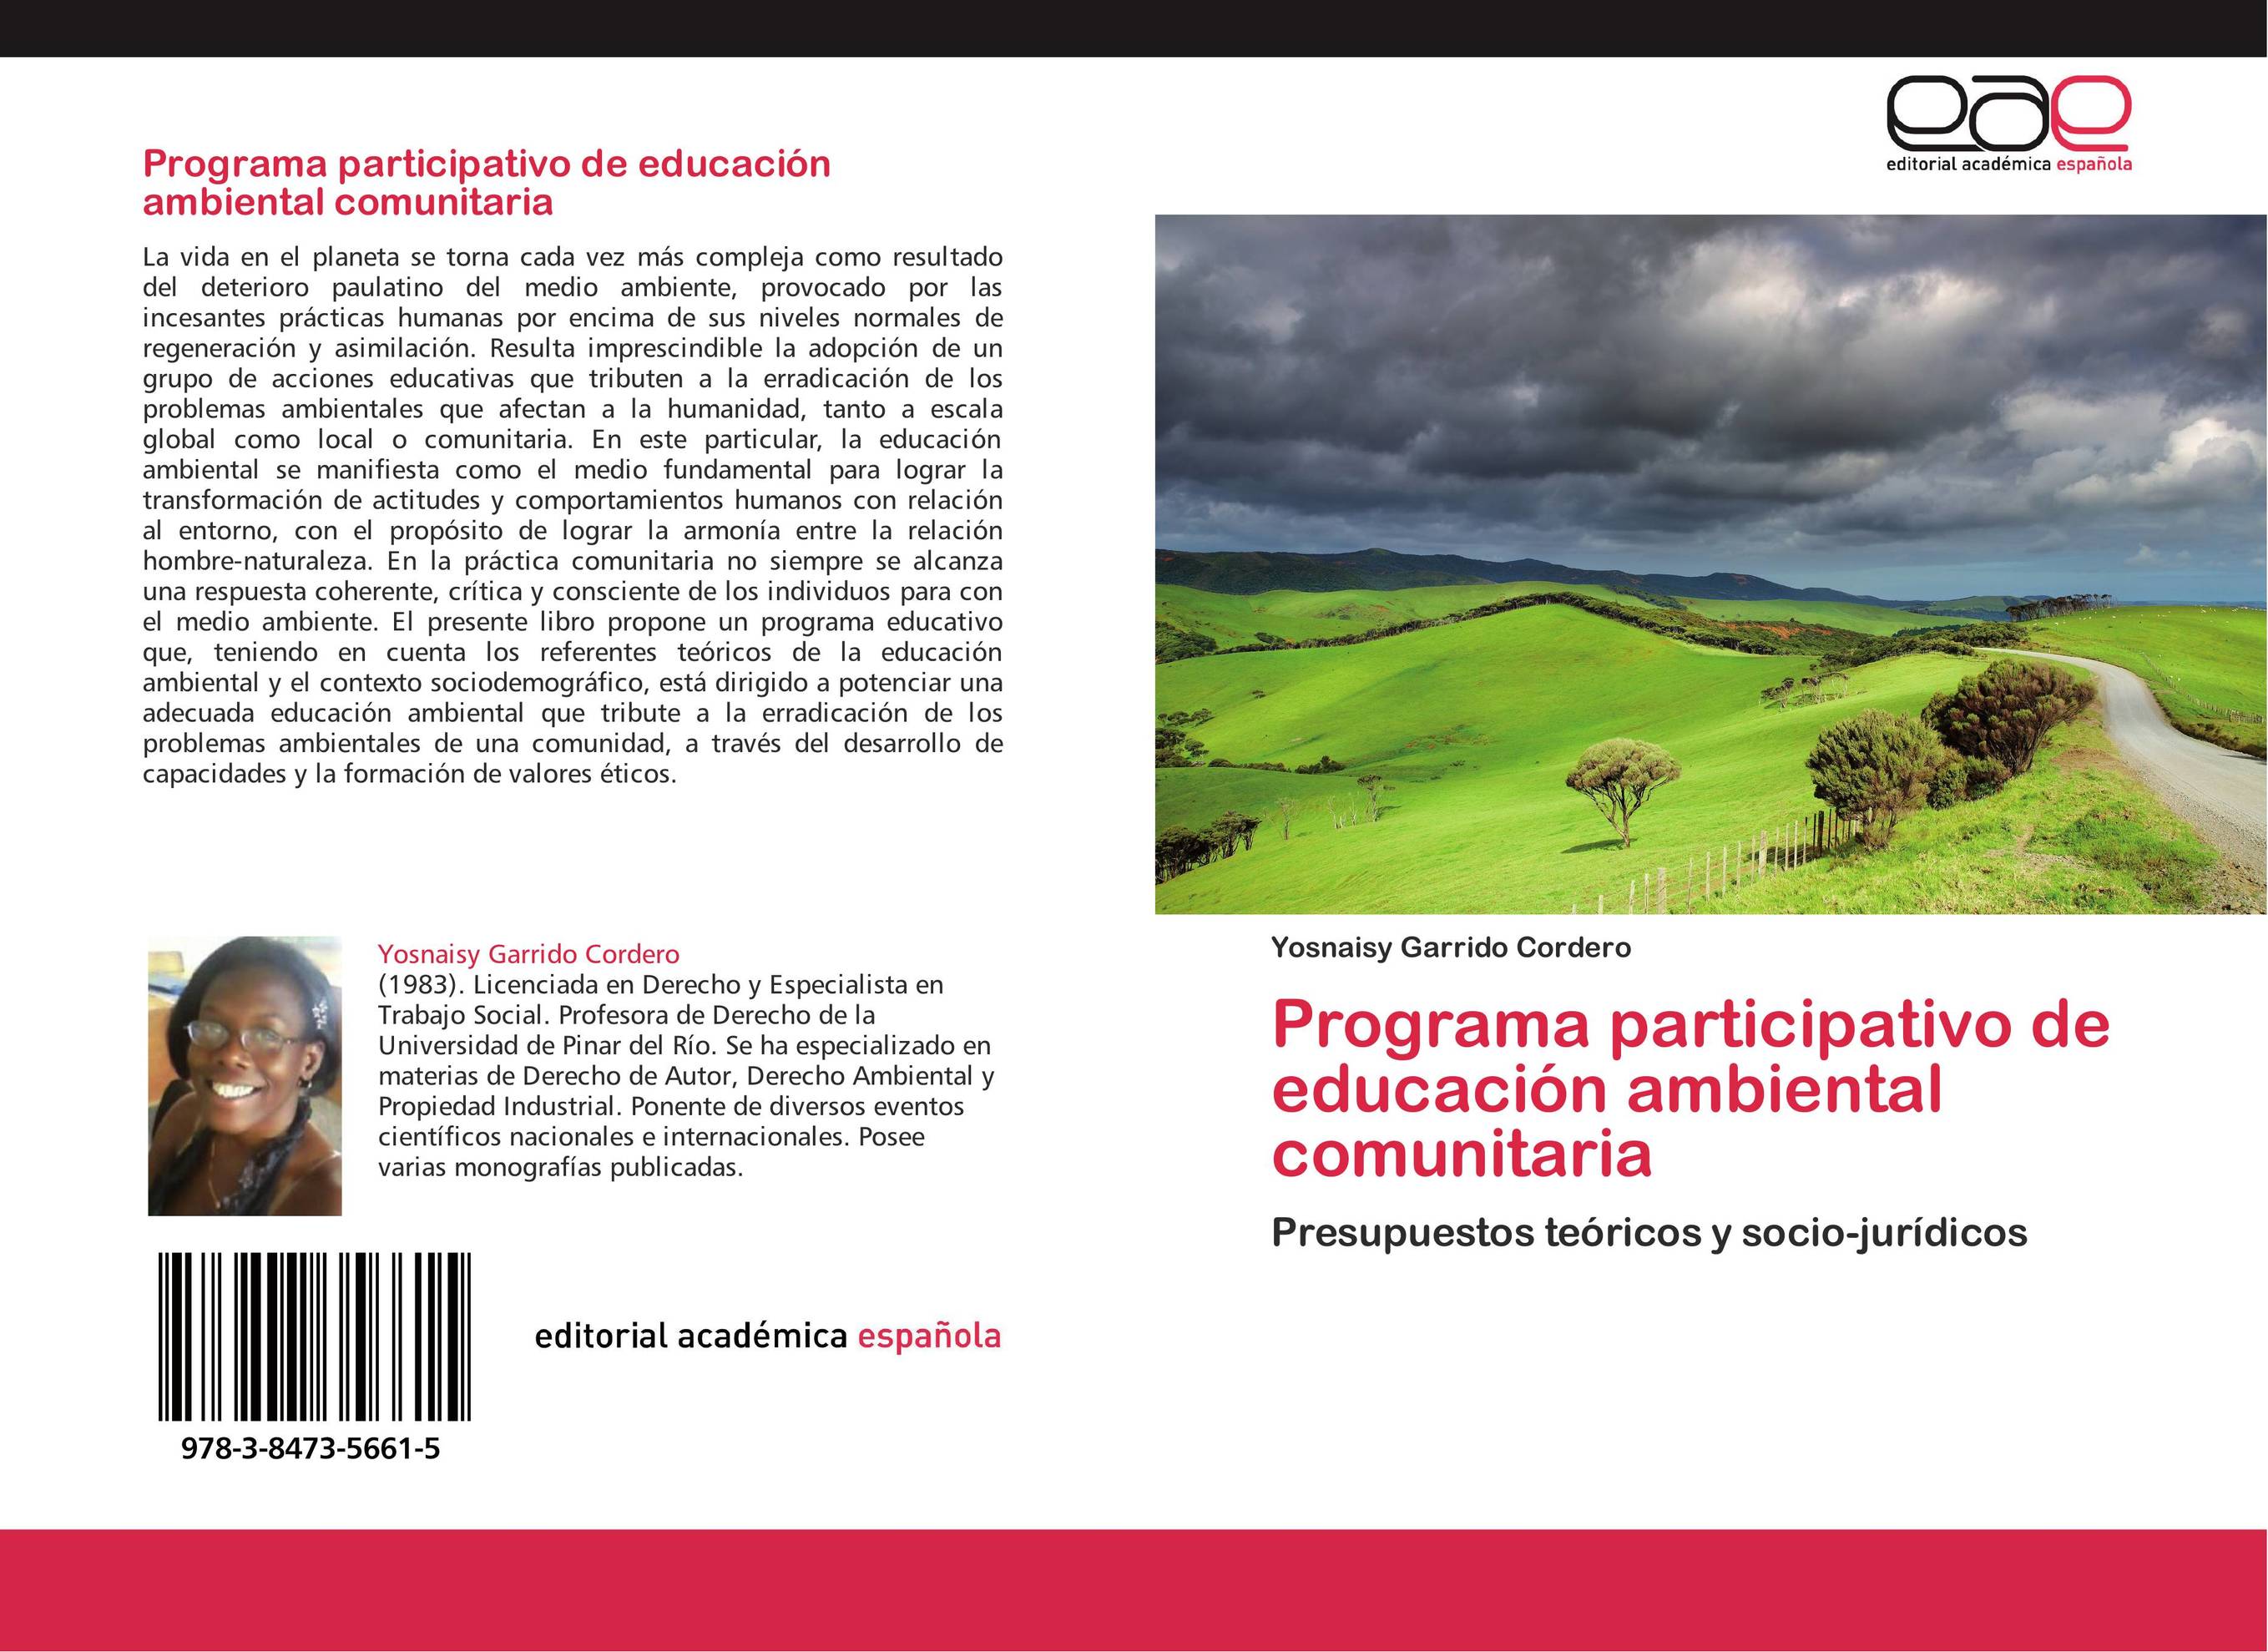 Programa participativo de educación ambiental comunitaria